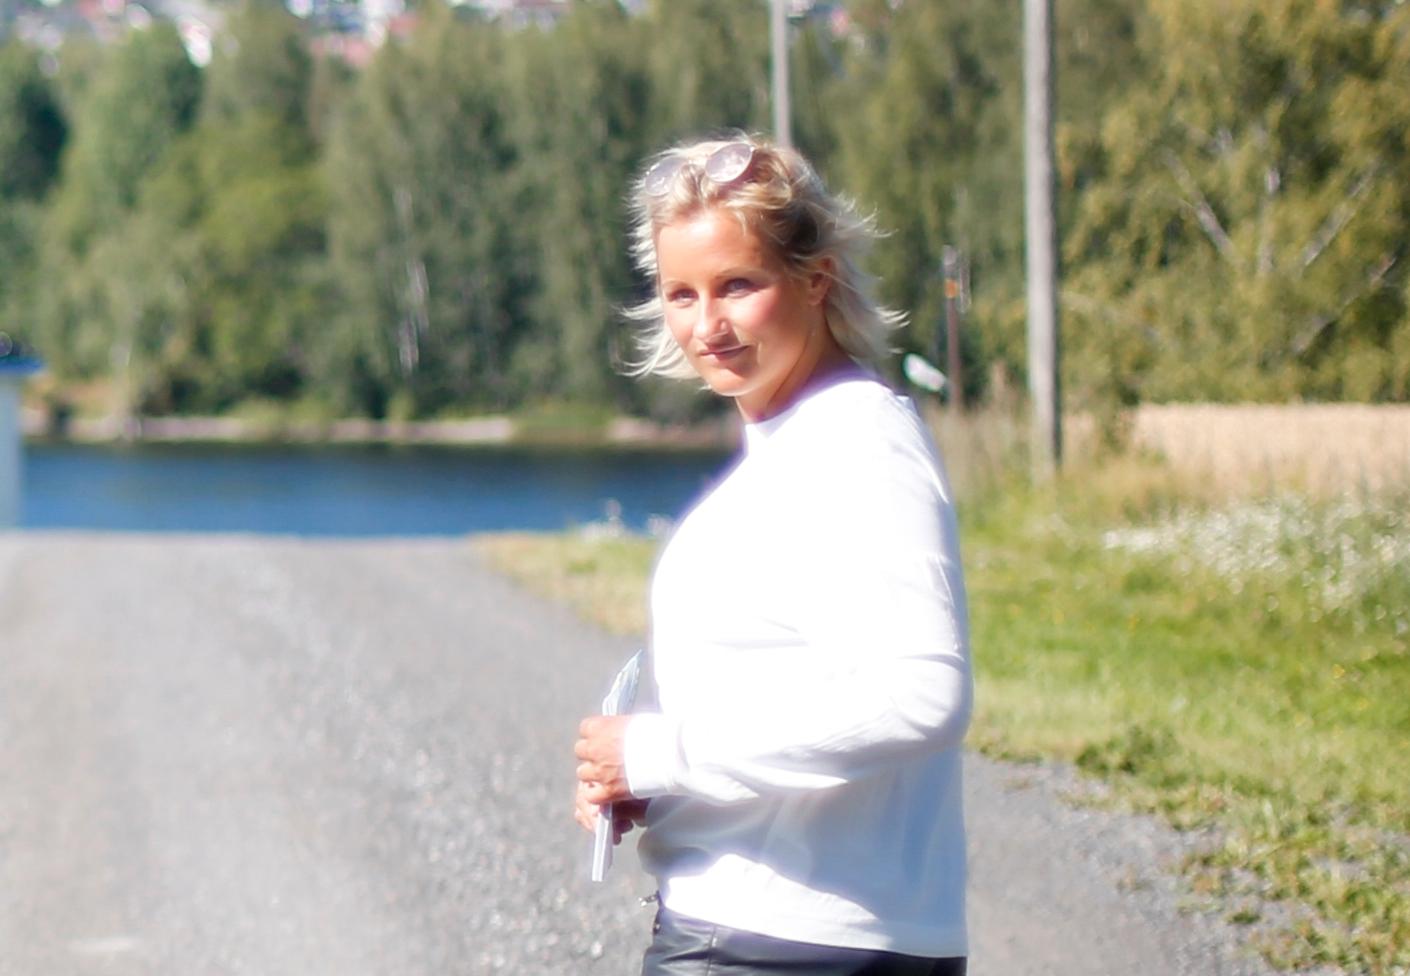   Vibeke Skofterud (38) omkom i vannscooterulykke i Arendal natt til søndag.   